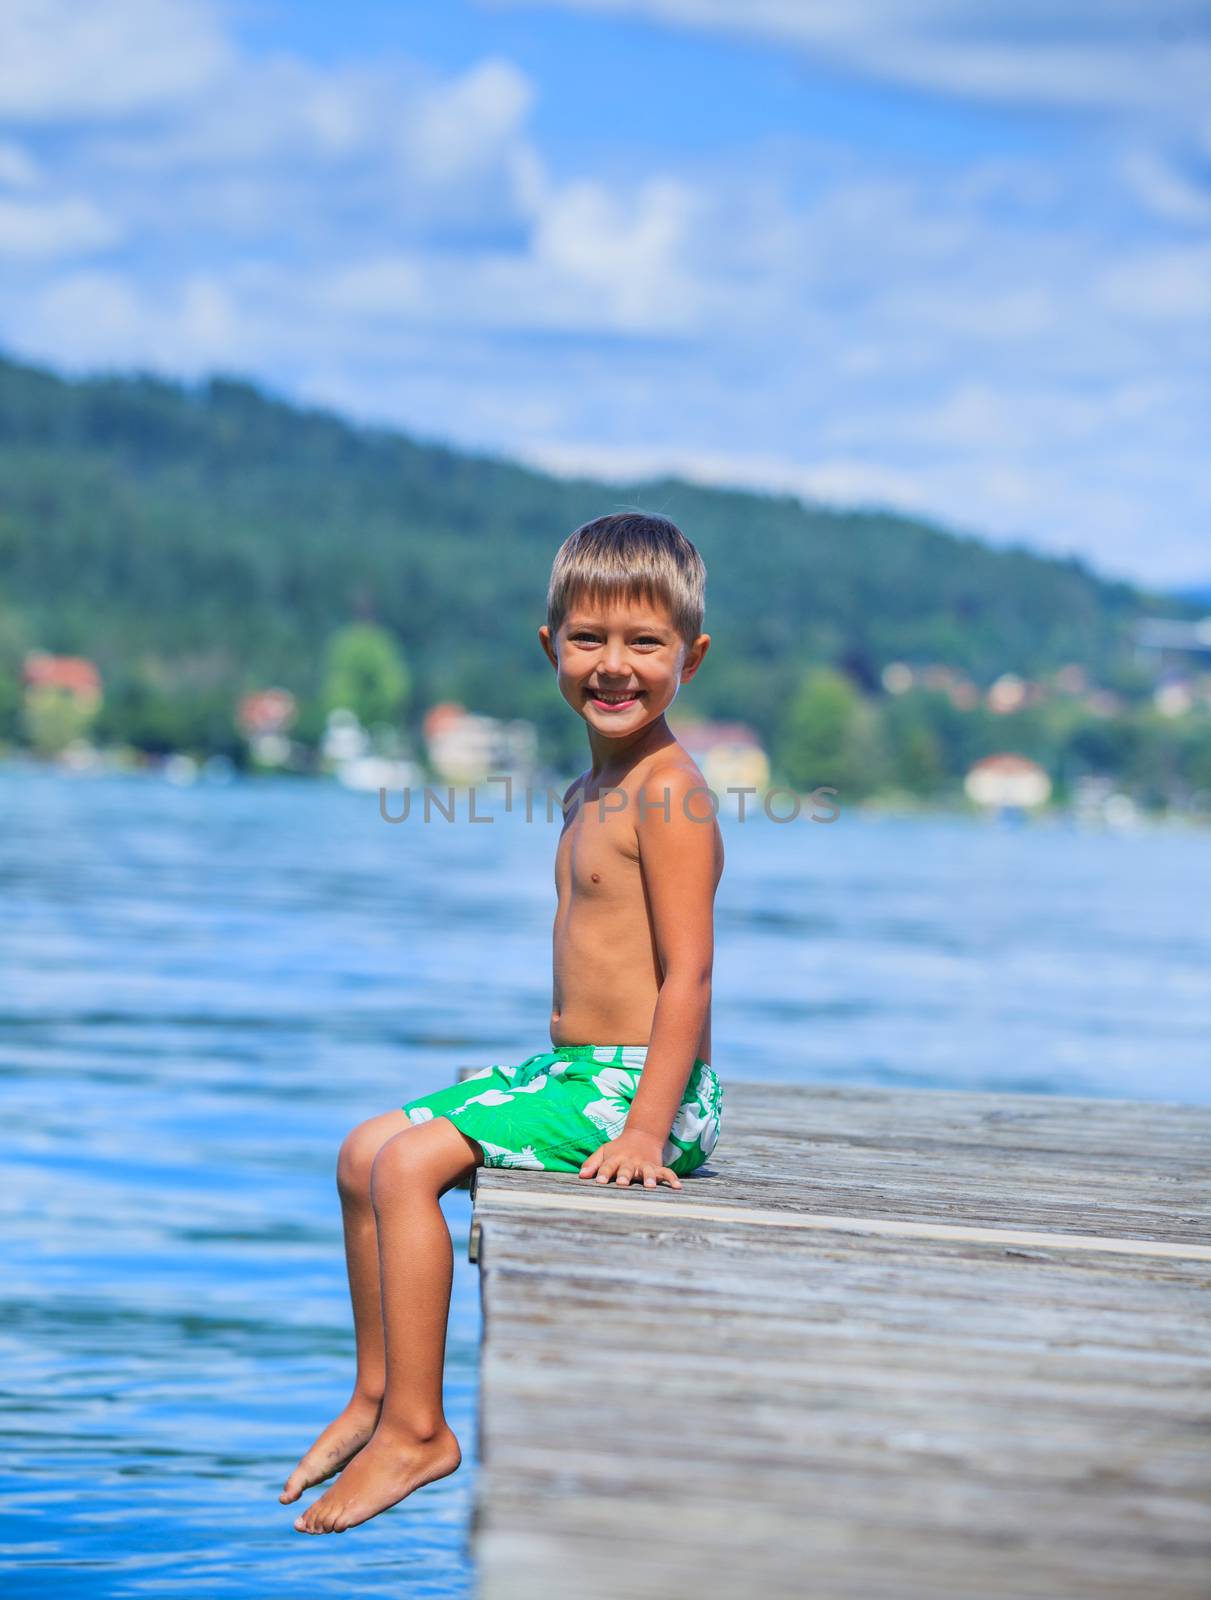 Kids at the lake by maxoliki